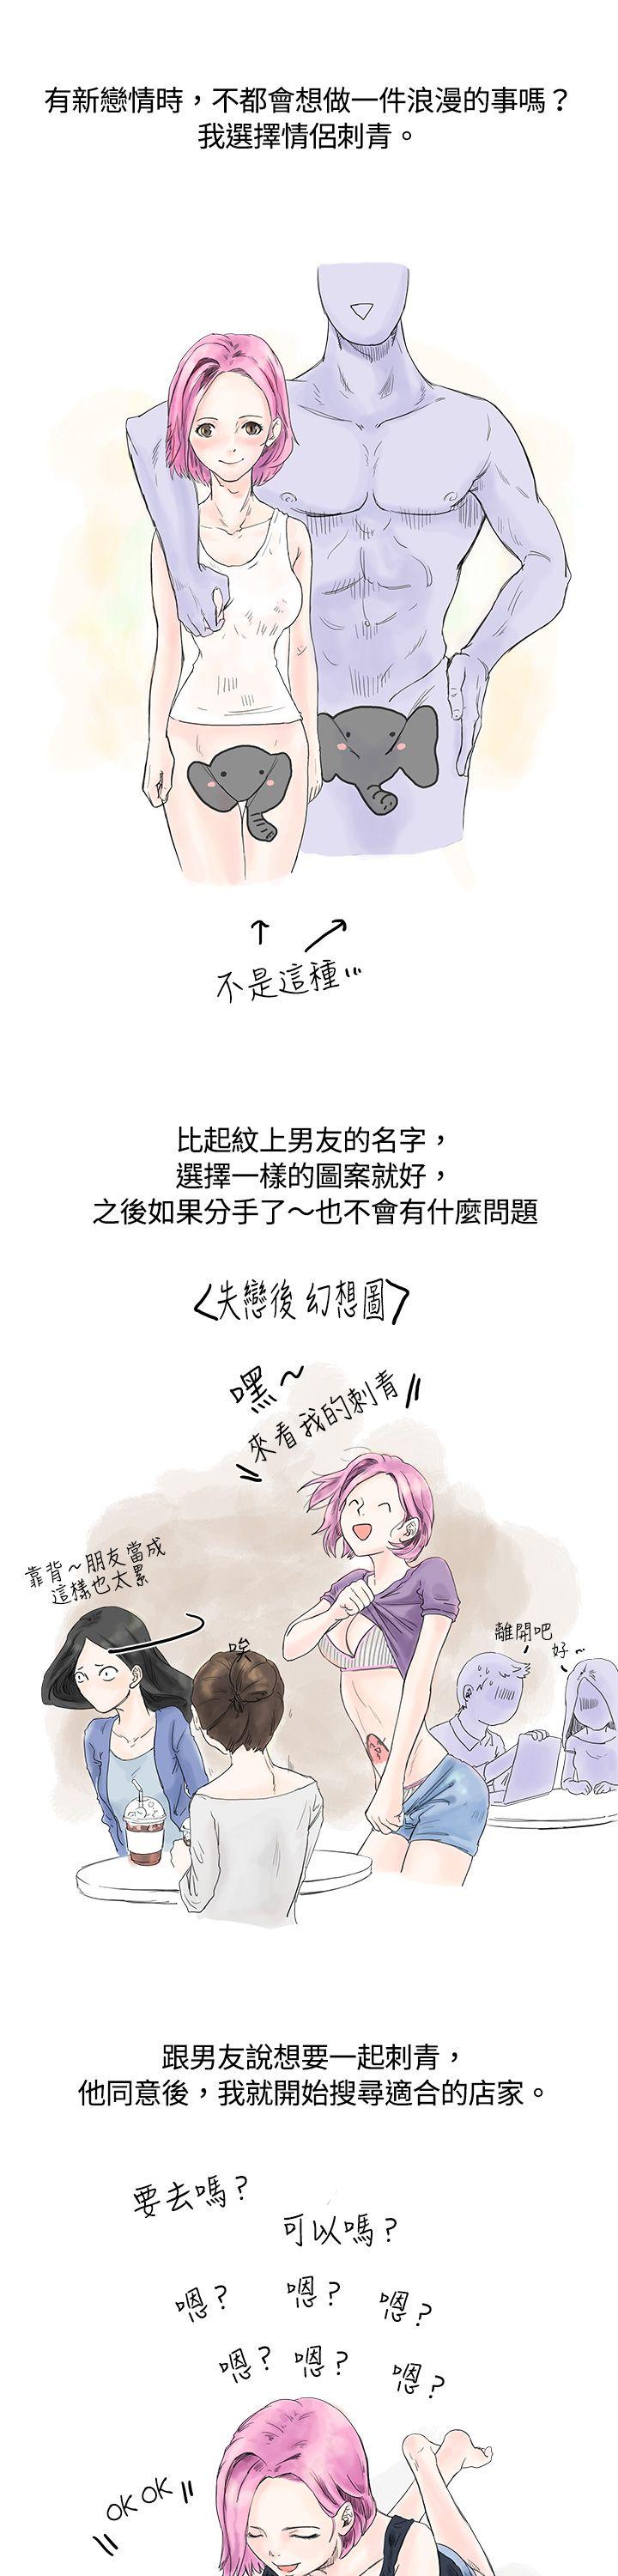 秘密Story  爱的刺青(上) 漫画图片1.jpg